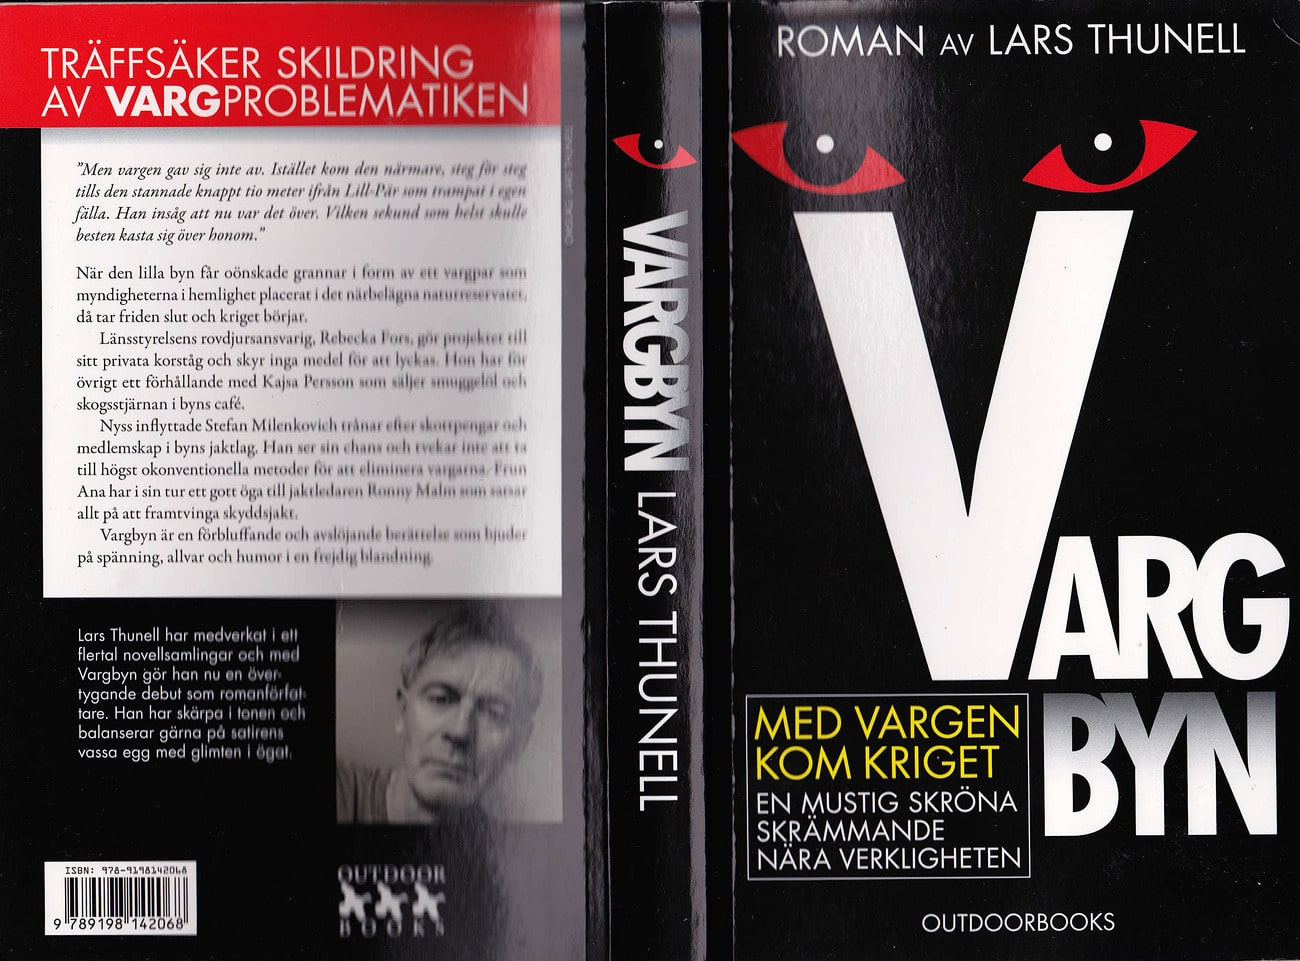 Romanen Vargbyn är skriven av Lars Thunell.